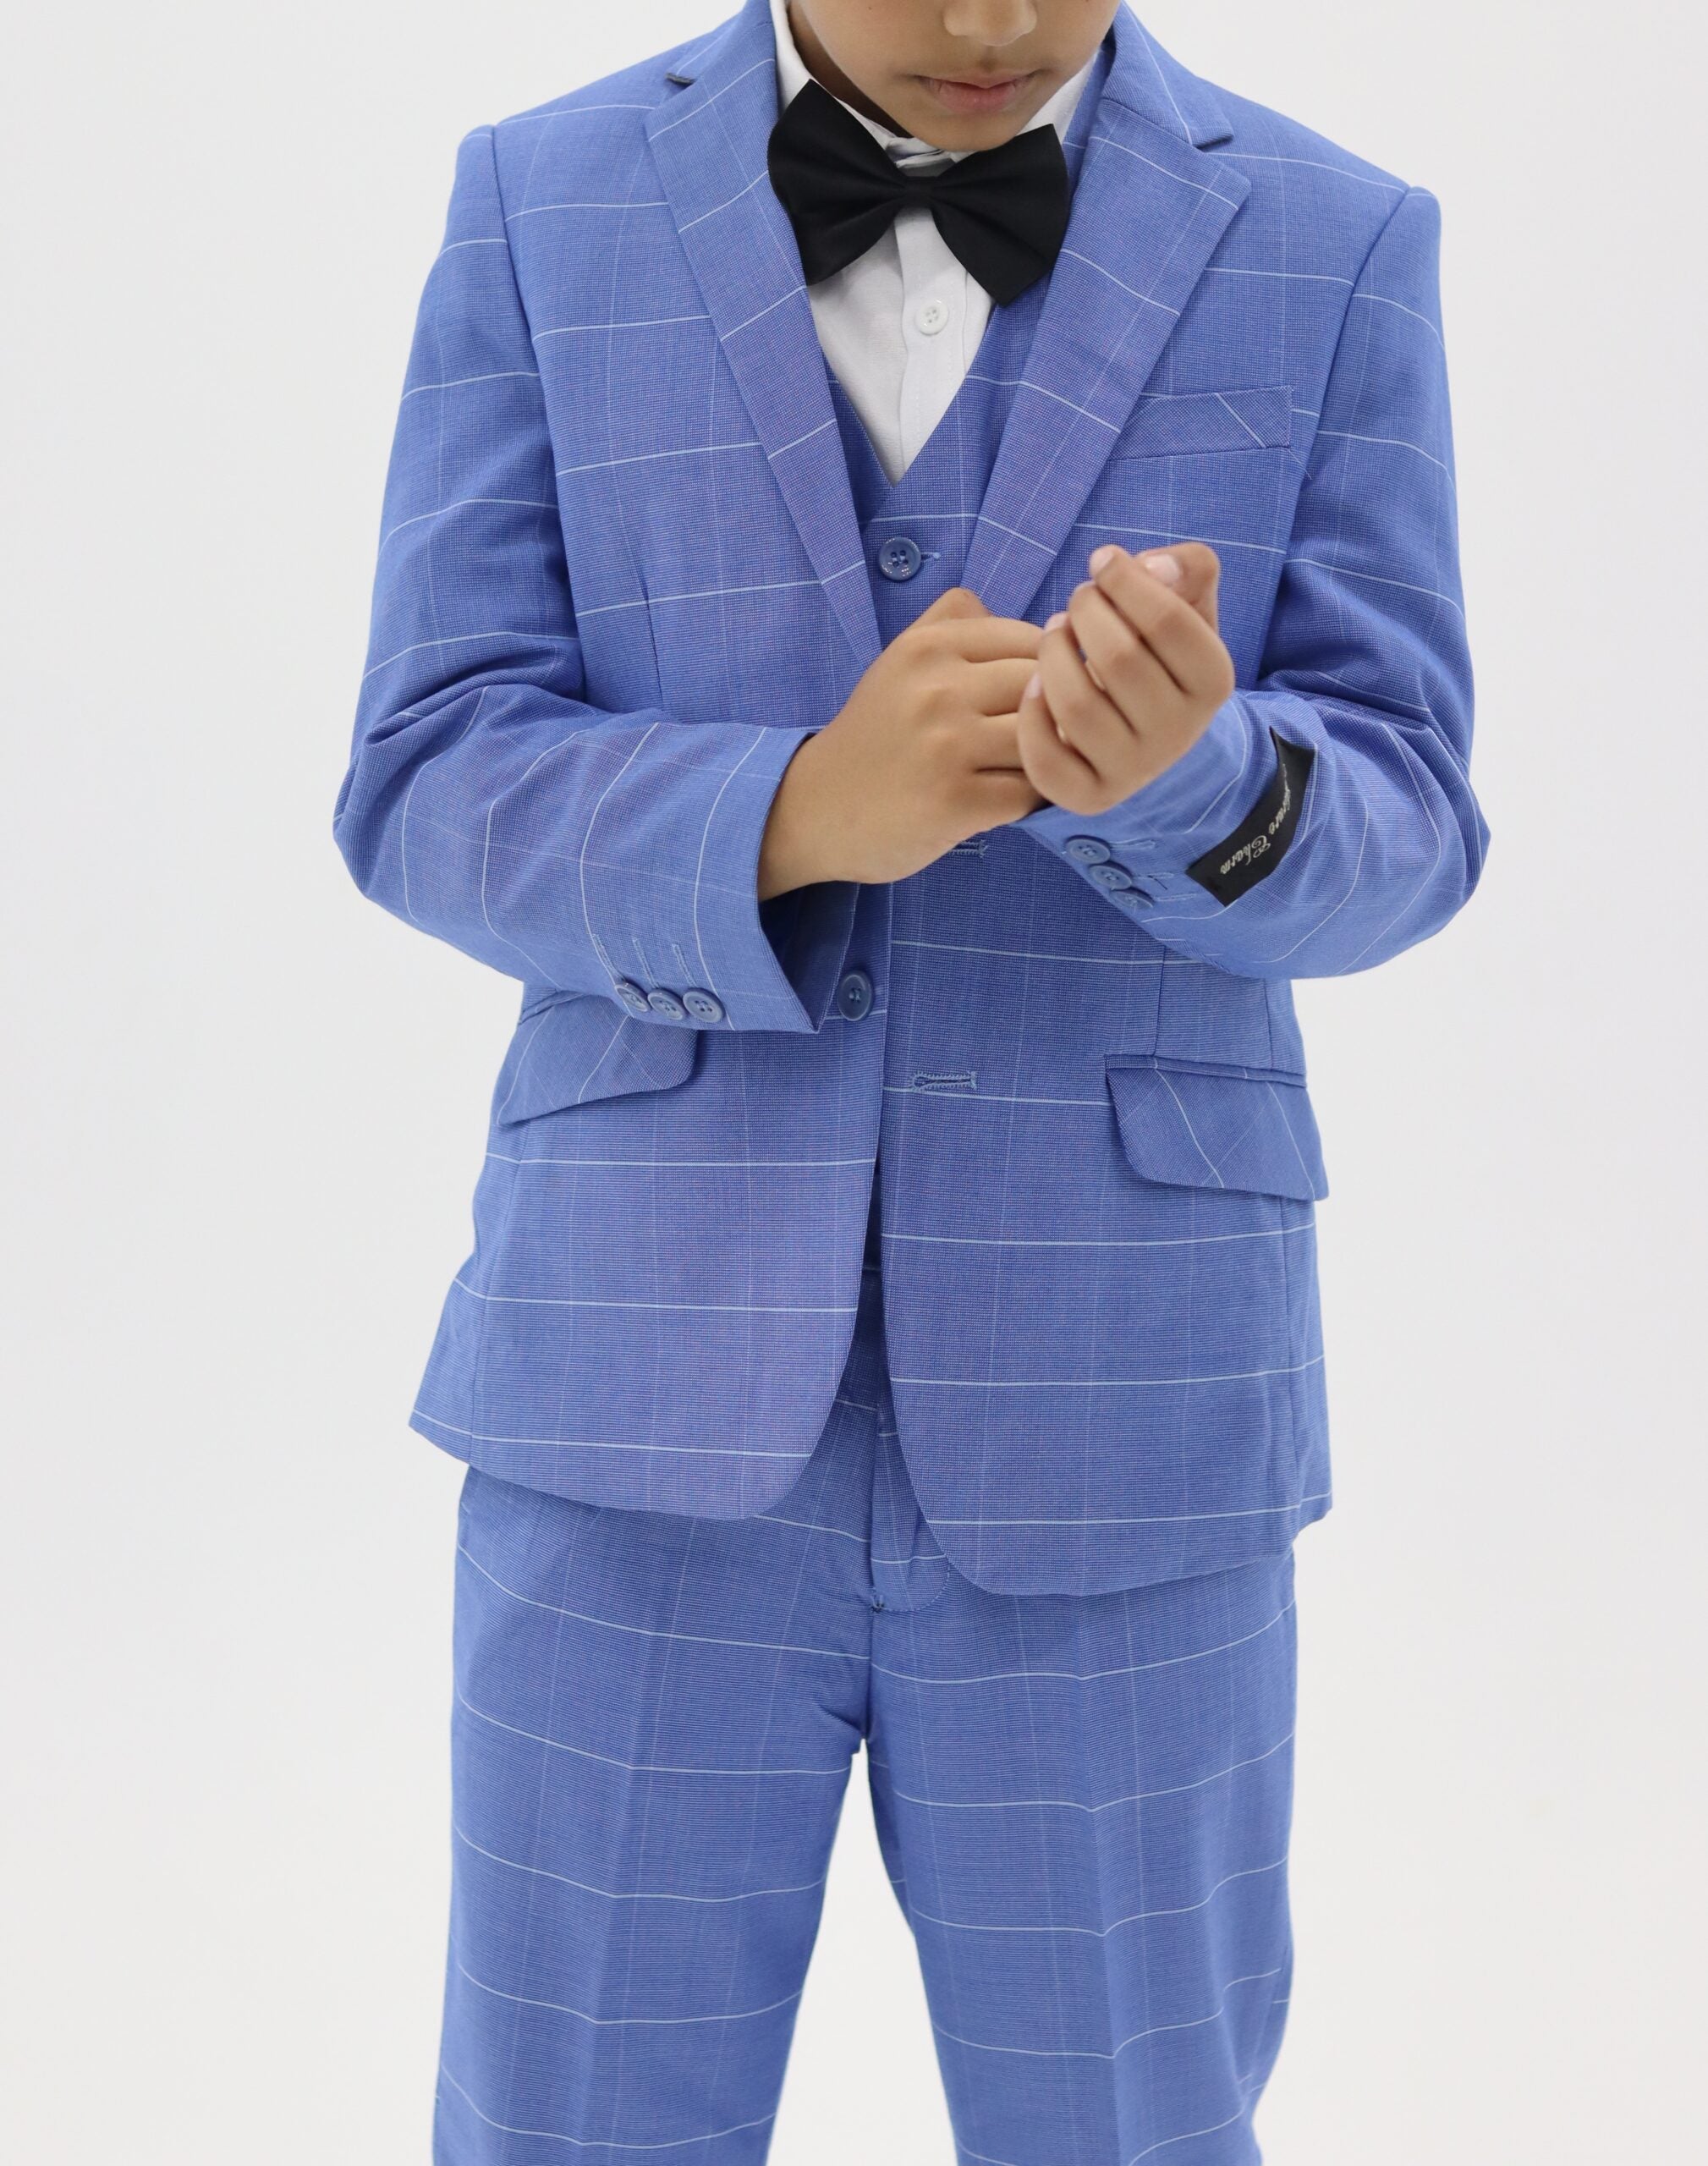 Boys Formal Slim Fit Check Blue Suit 3Pc Set